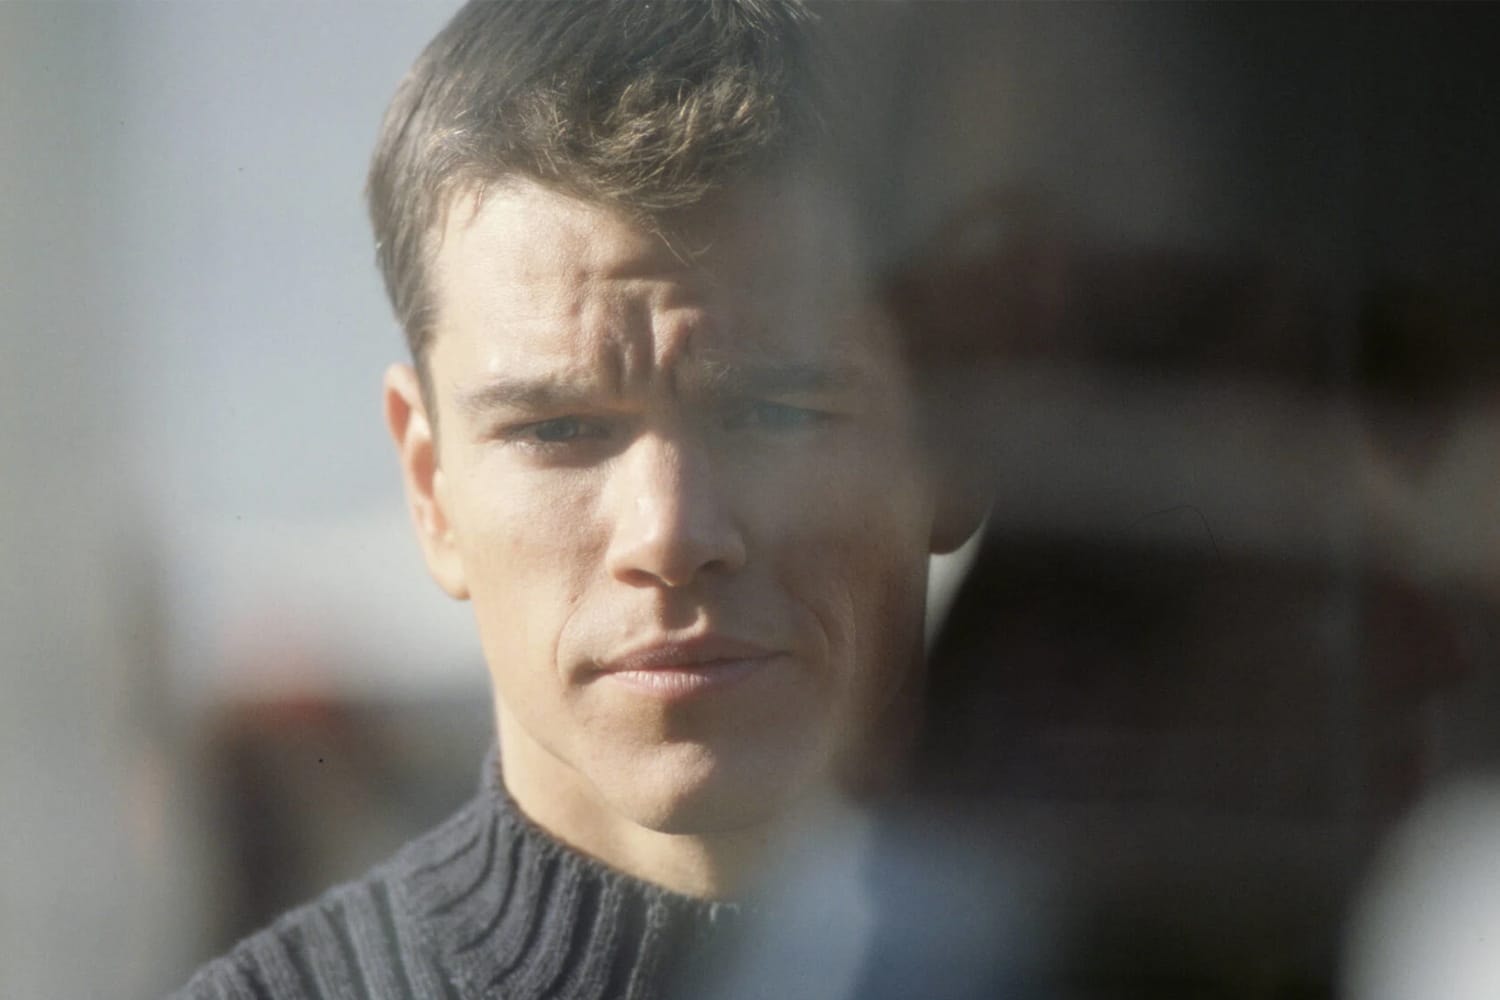 消息称 Matt Damon 主演动作电影《The Bourne Identity》有望推出全新续集